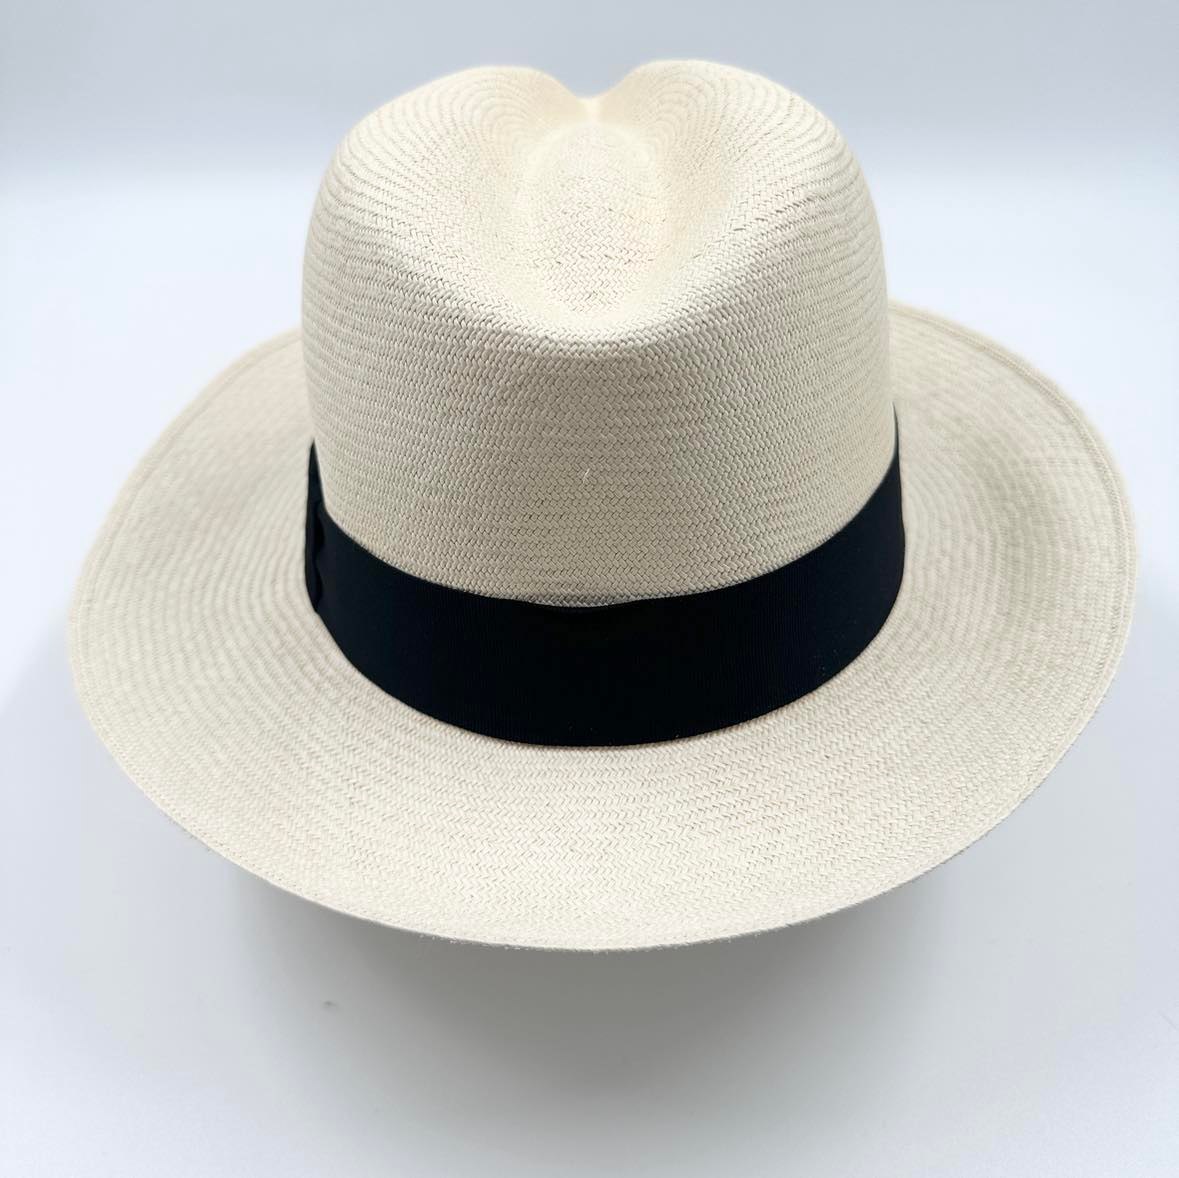 Ægte Montecristi Fedora Panama Hat med en kvalitet på 17-18 fletning pr. inch - unik og håndflettet i Ecuador